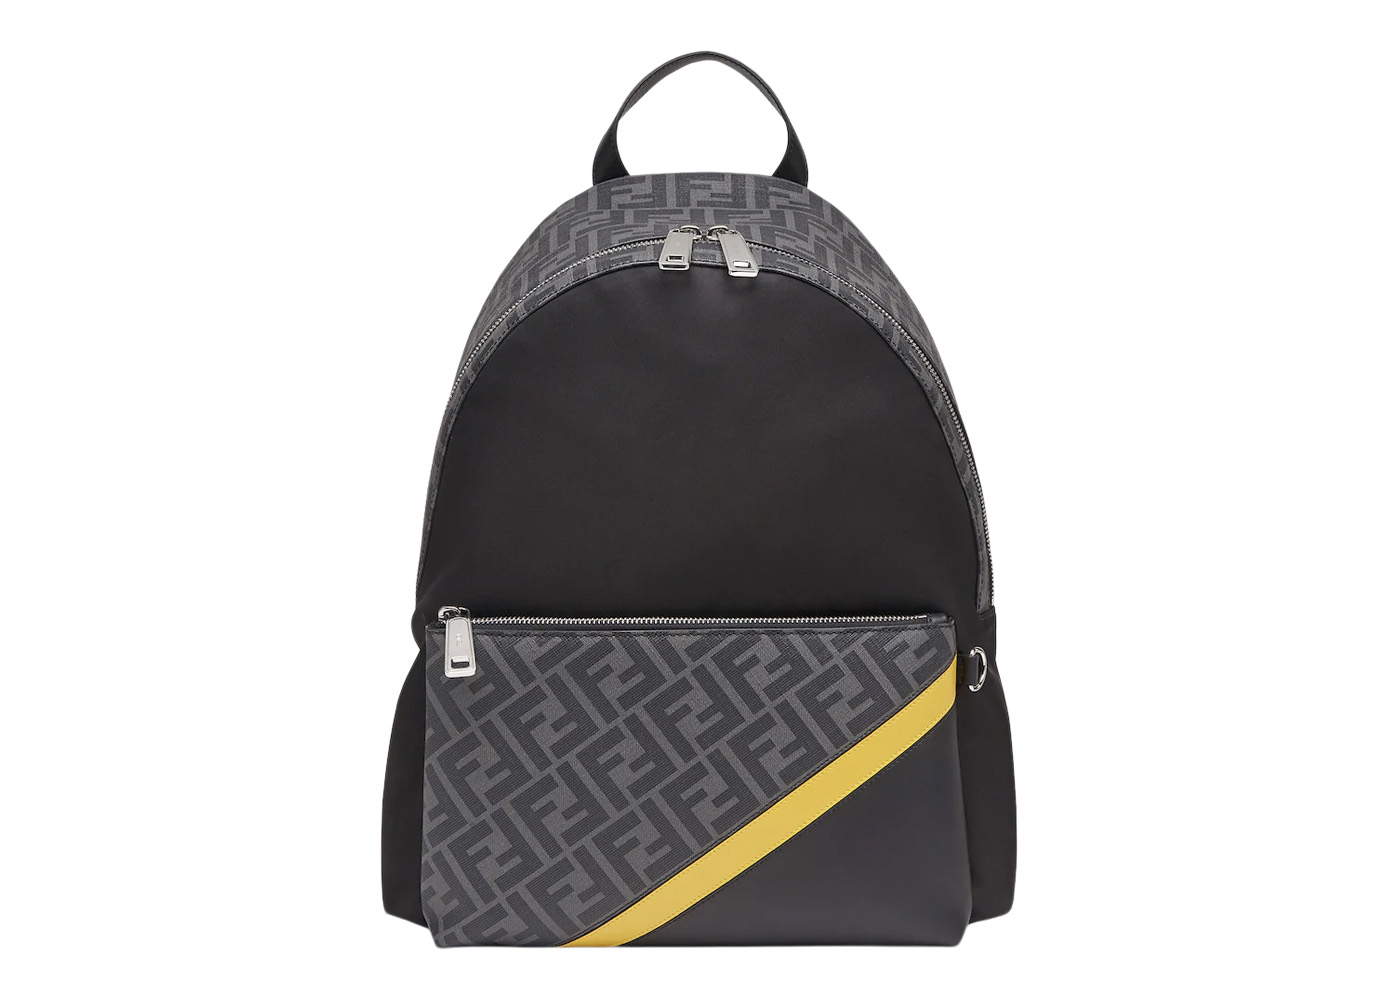 FENDI Backpacks Fendi Leather For Female for Women